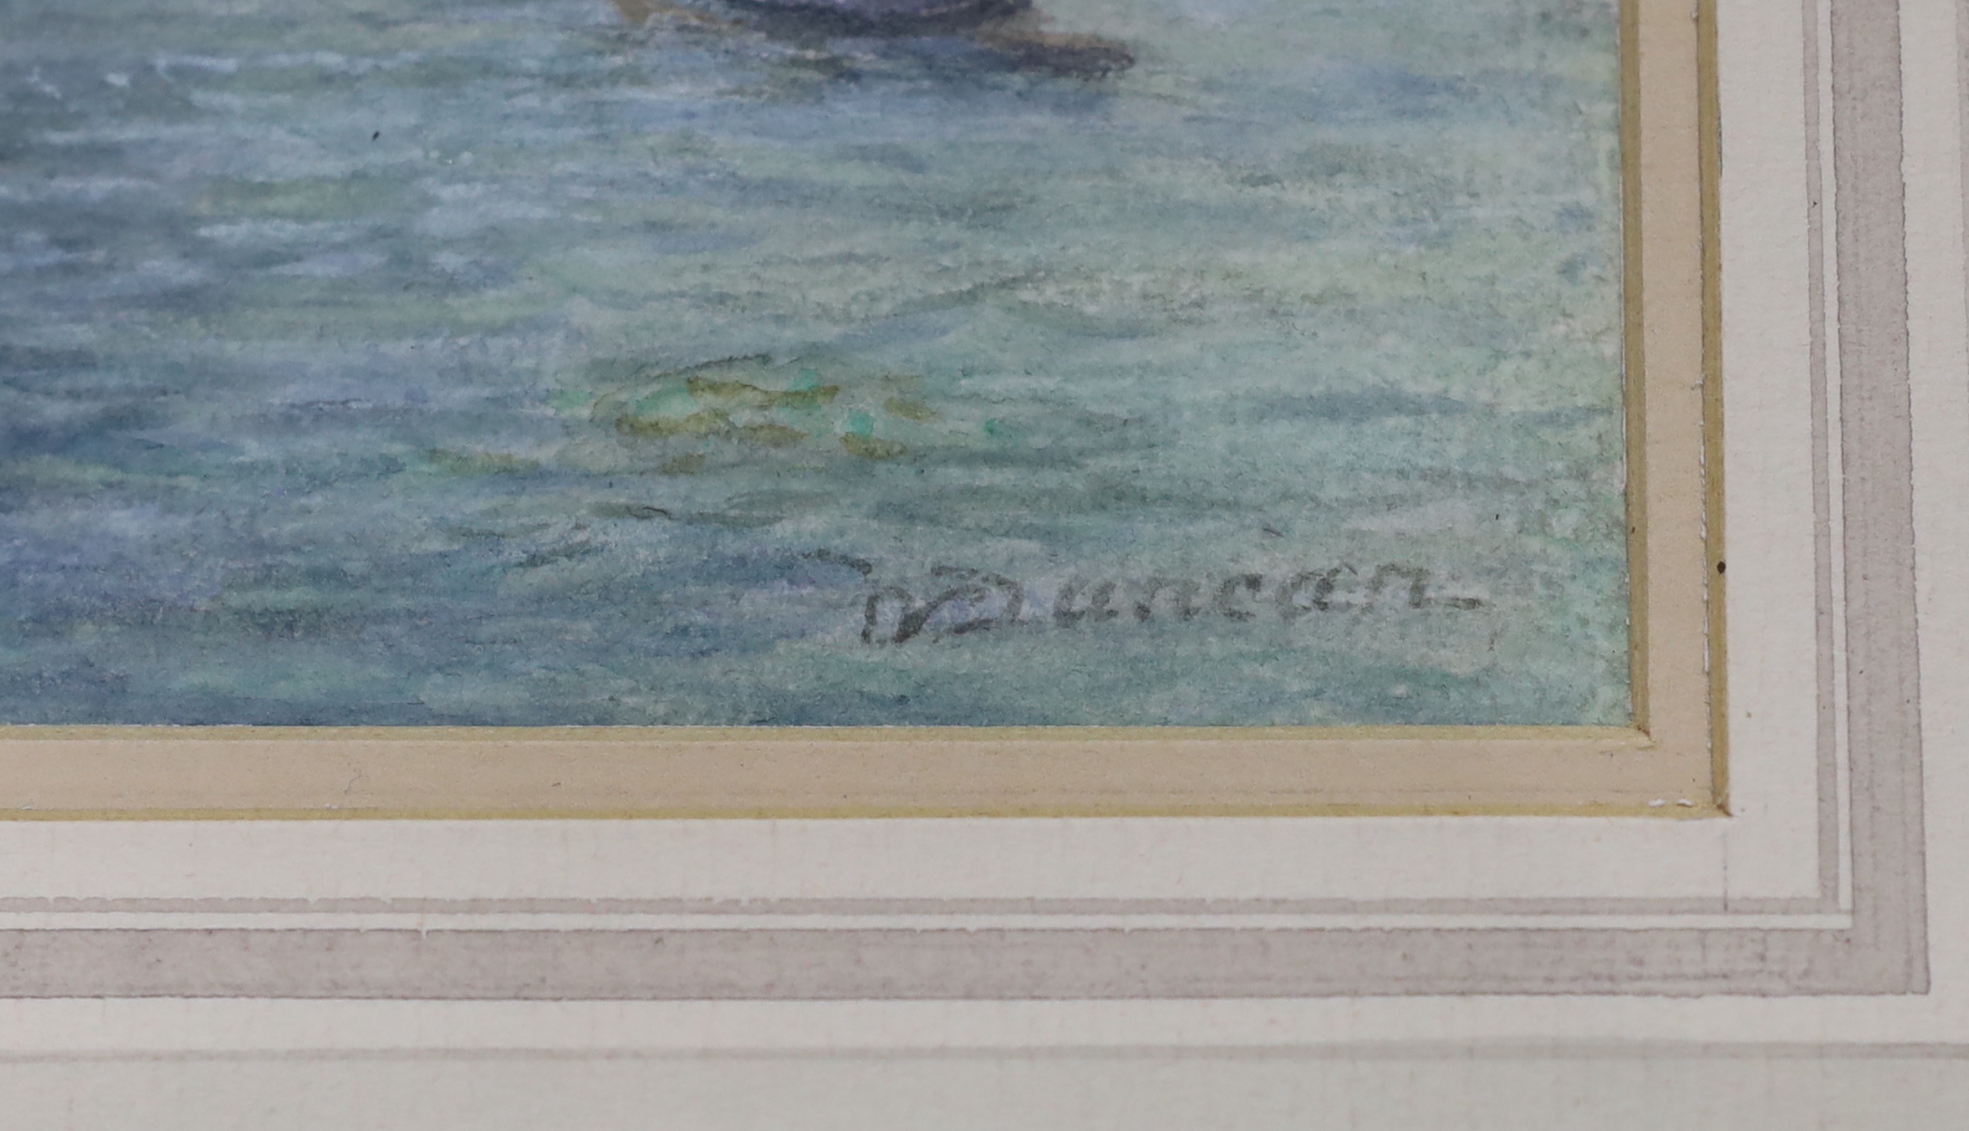 Walter Duncan (1848-1932), watercolour, St Thomas's, signed, details verso, 28cm x 18cm